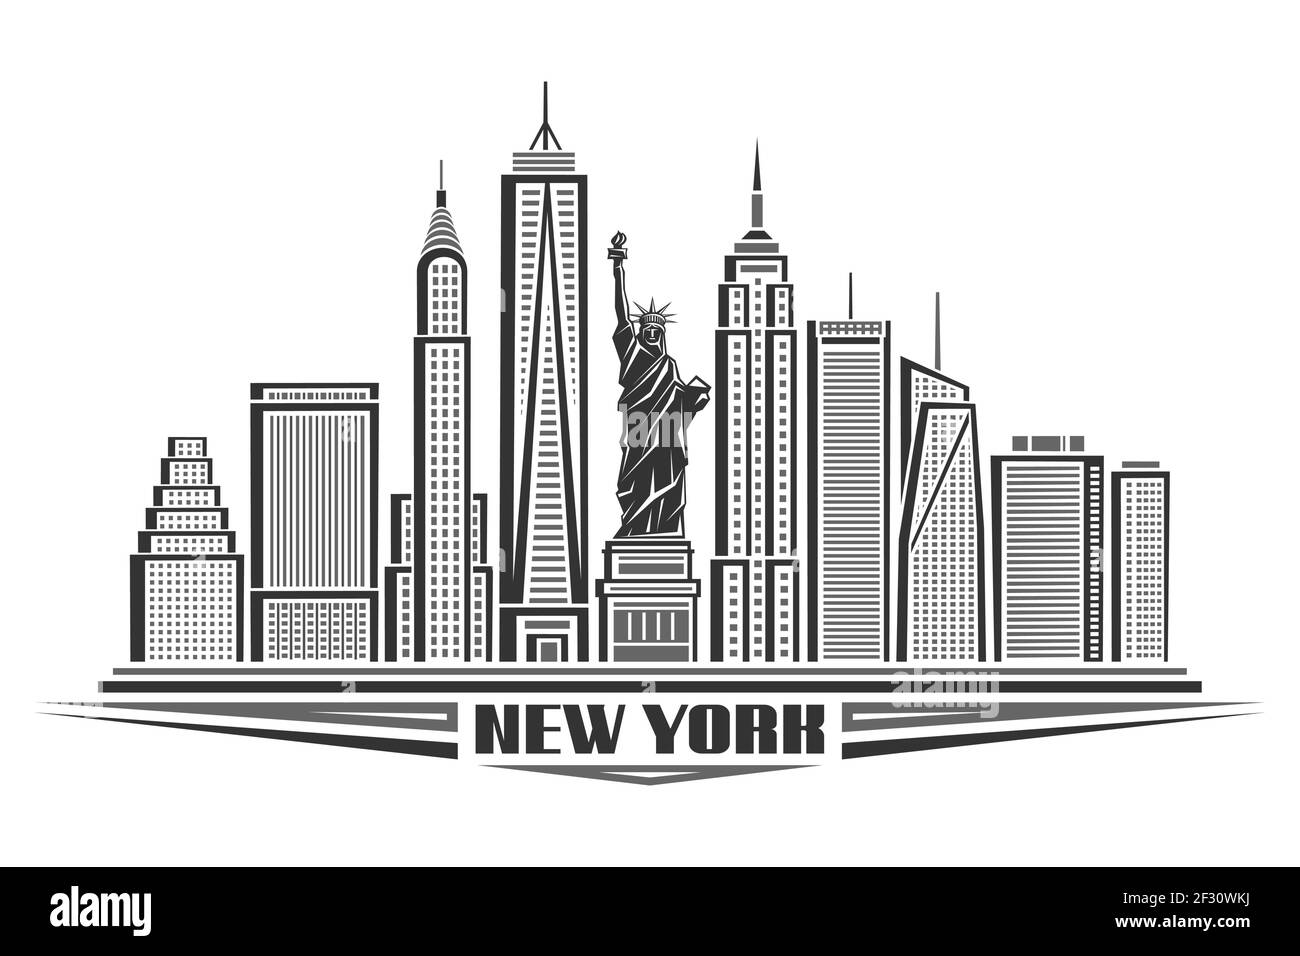 Illustration vectorielle de la ville de New York, affiche en noir et blanc avec le symbole de NYC - Statue de la liberté et esquisse le paysage urbain moderne et contemporain Illustration de Vecteur